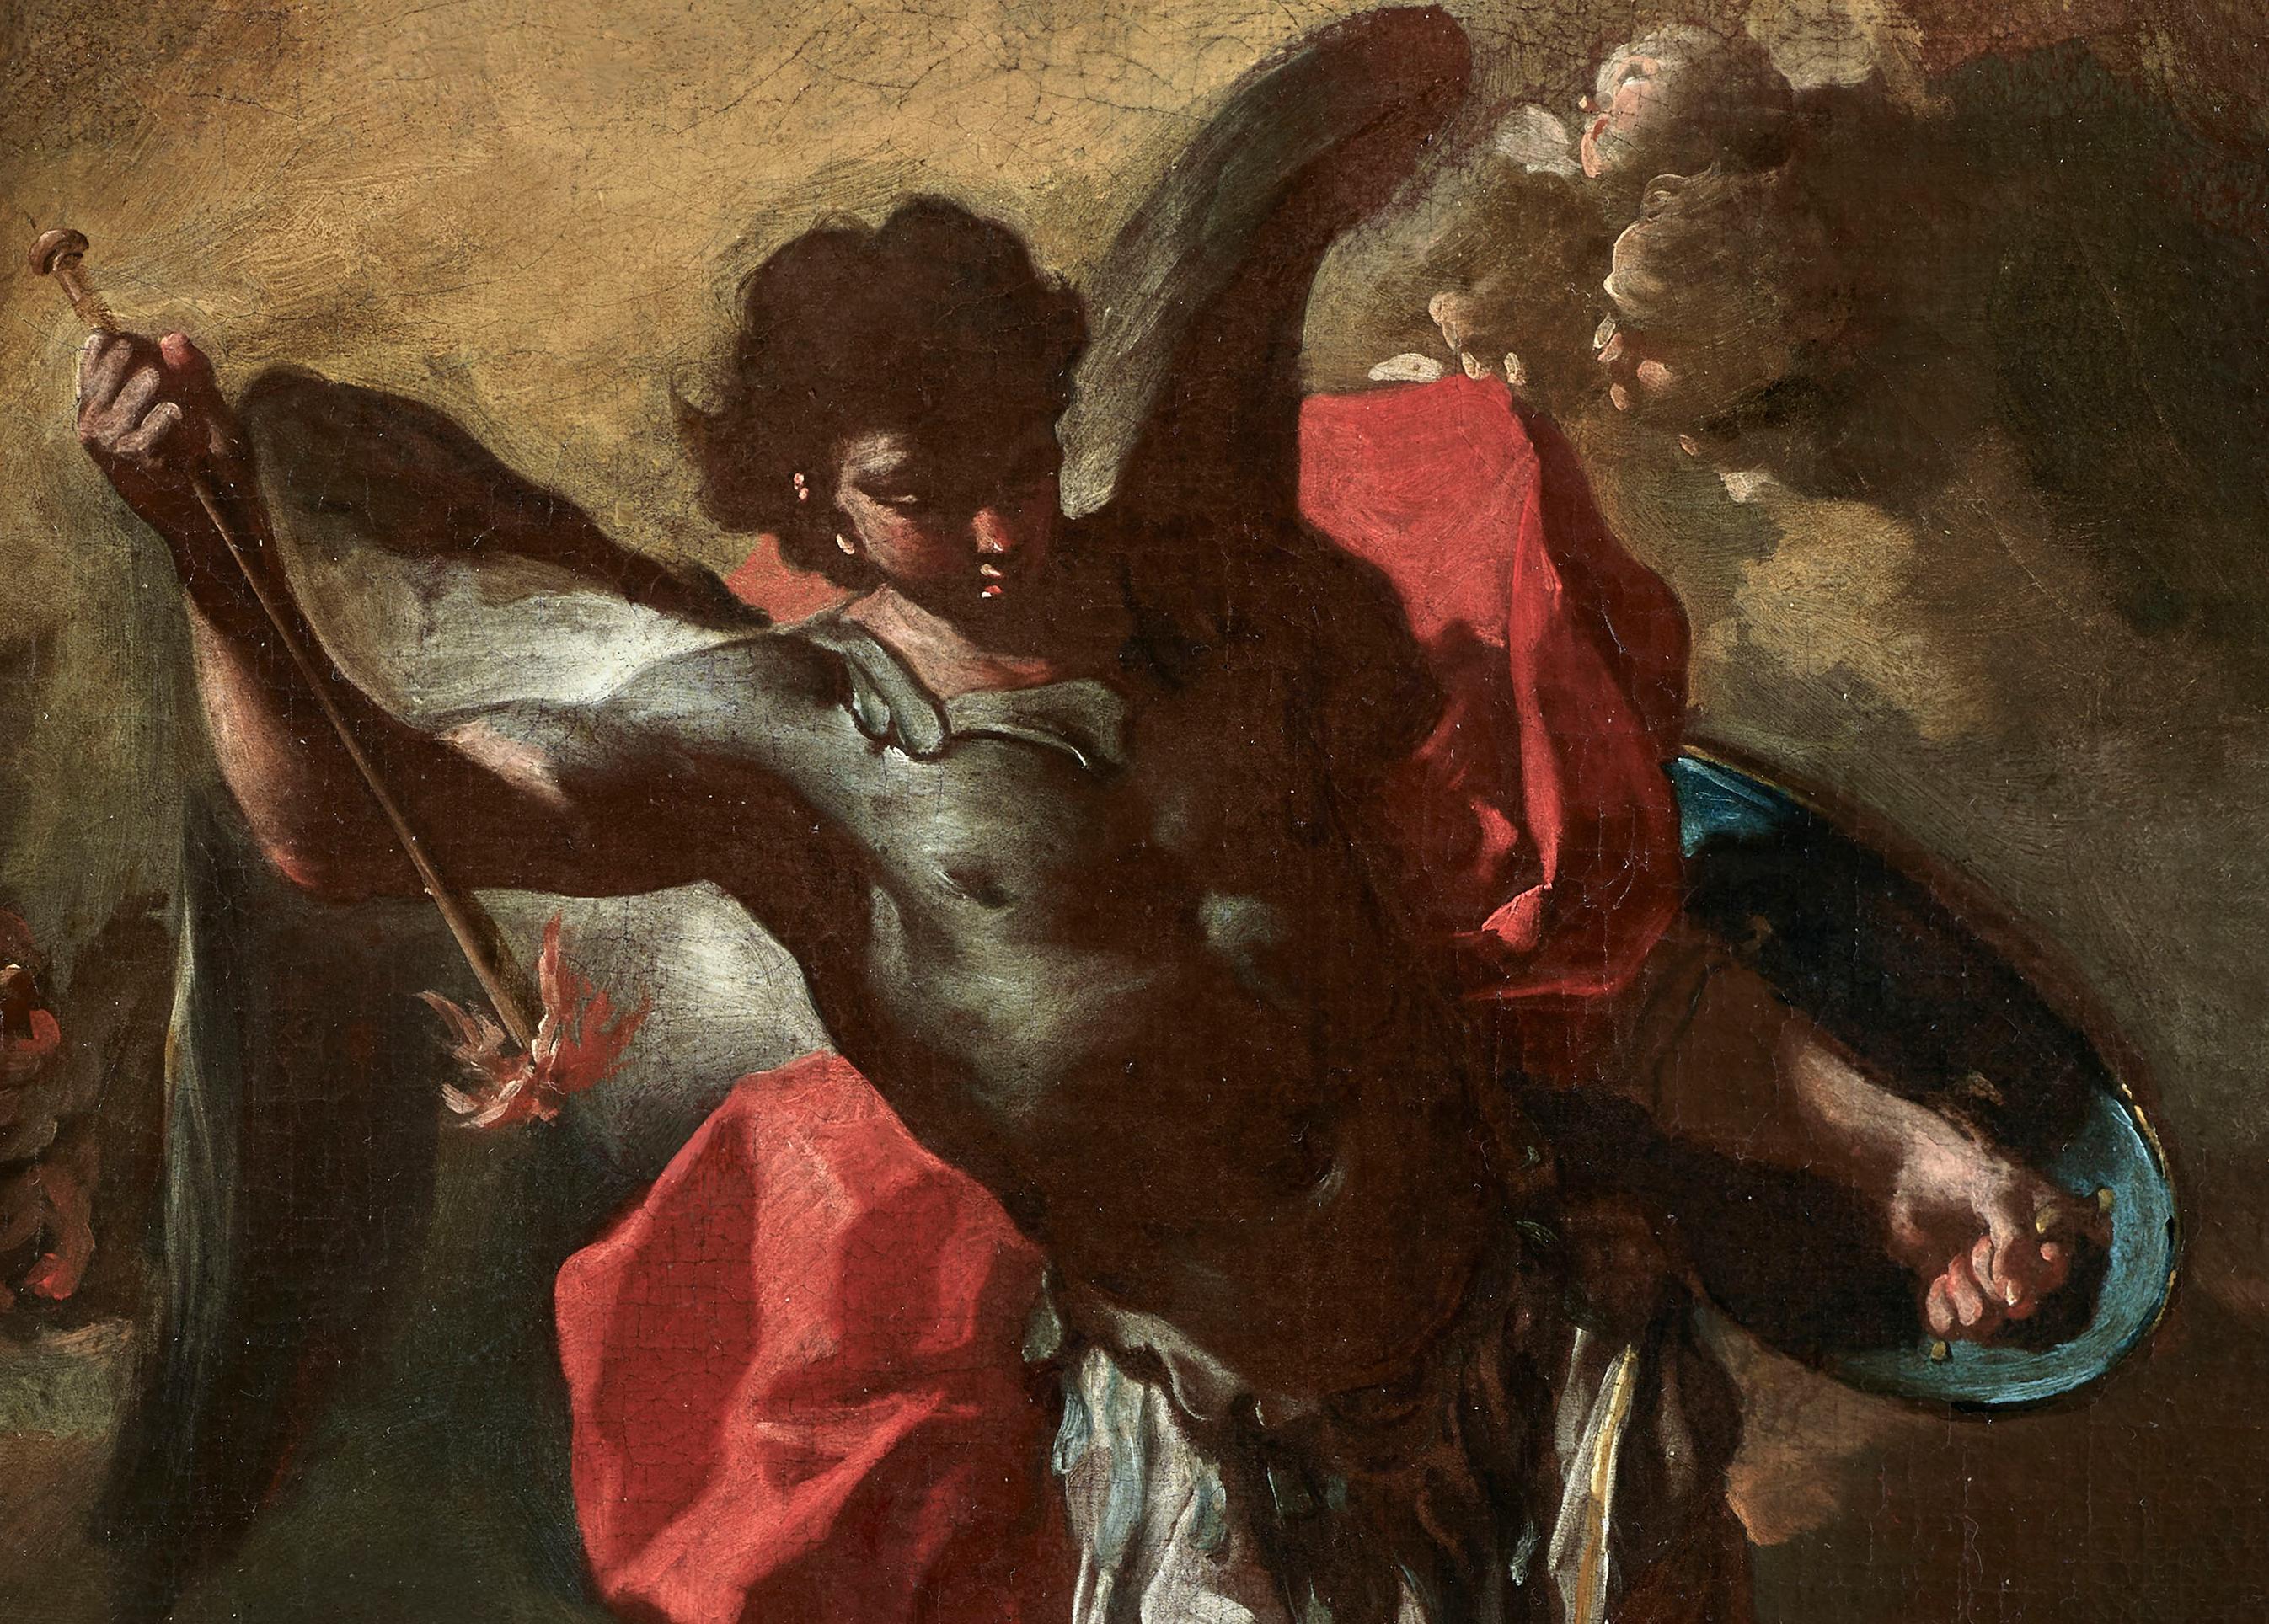 Diese Darstellung des Heiligen Michael im Kampf gegen den Satan zeigt eine dynamische Komposition, die durch die besondere Verwendung von Farbe und ein intensives Hell-Dunkel bereichert wird, was dem Werk eine besondere Atmosphäre verleiht. Bereiche